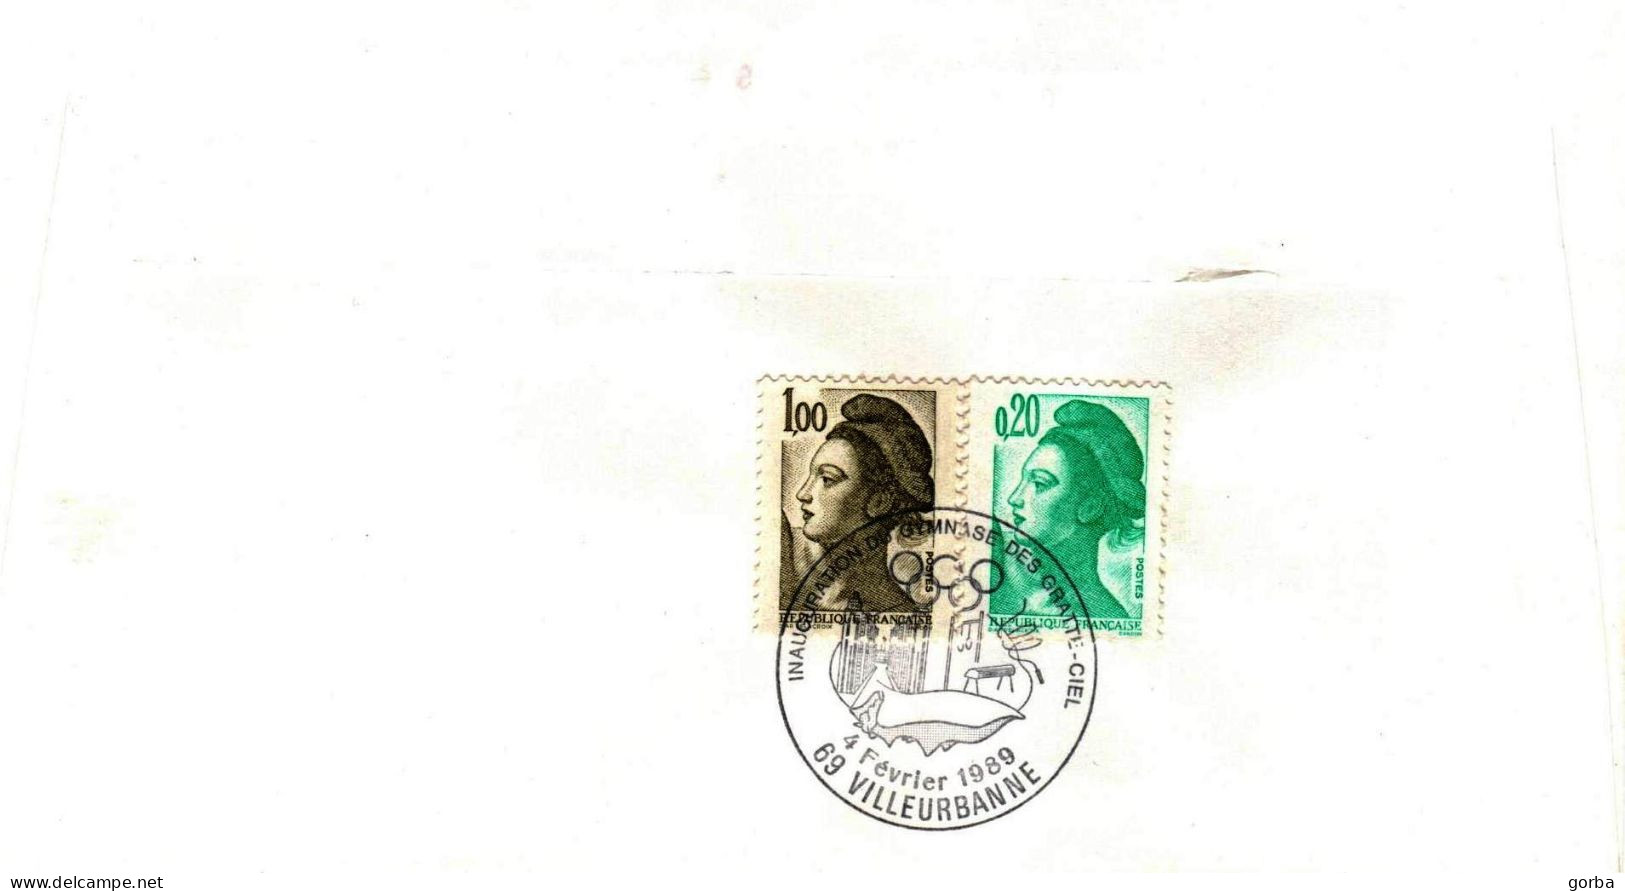 *1 carte et 3 Enveloppes Souvenir - Inaugurations Gymnase des Gratte-ciel - VILLEURBANNE (69)